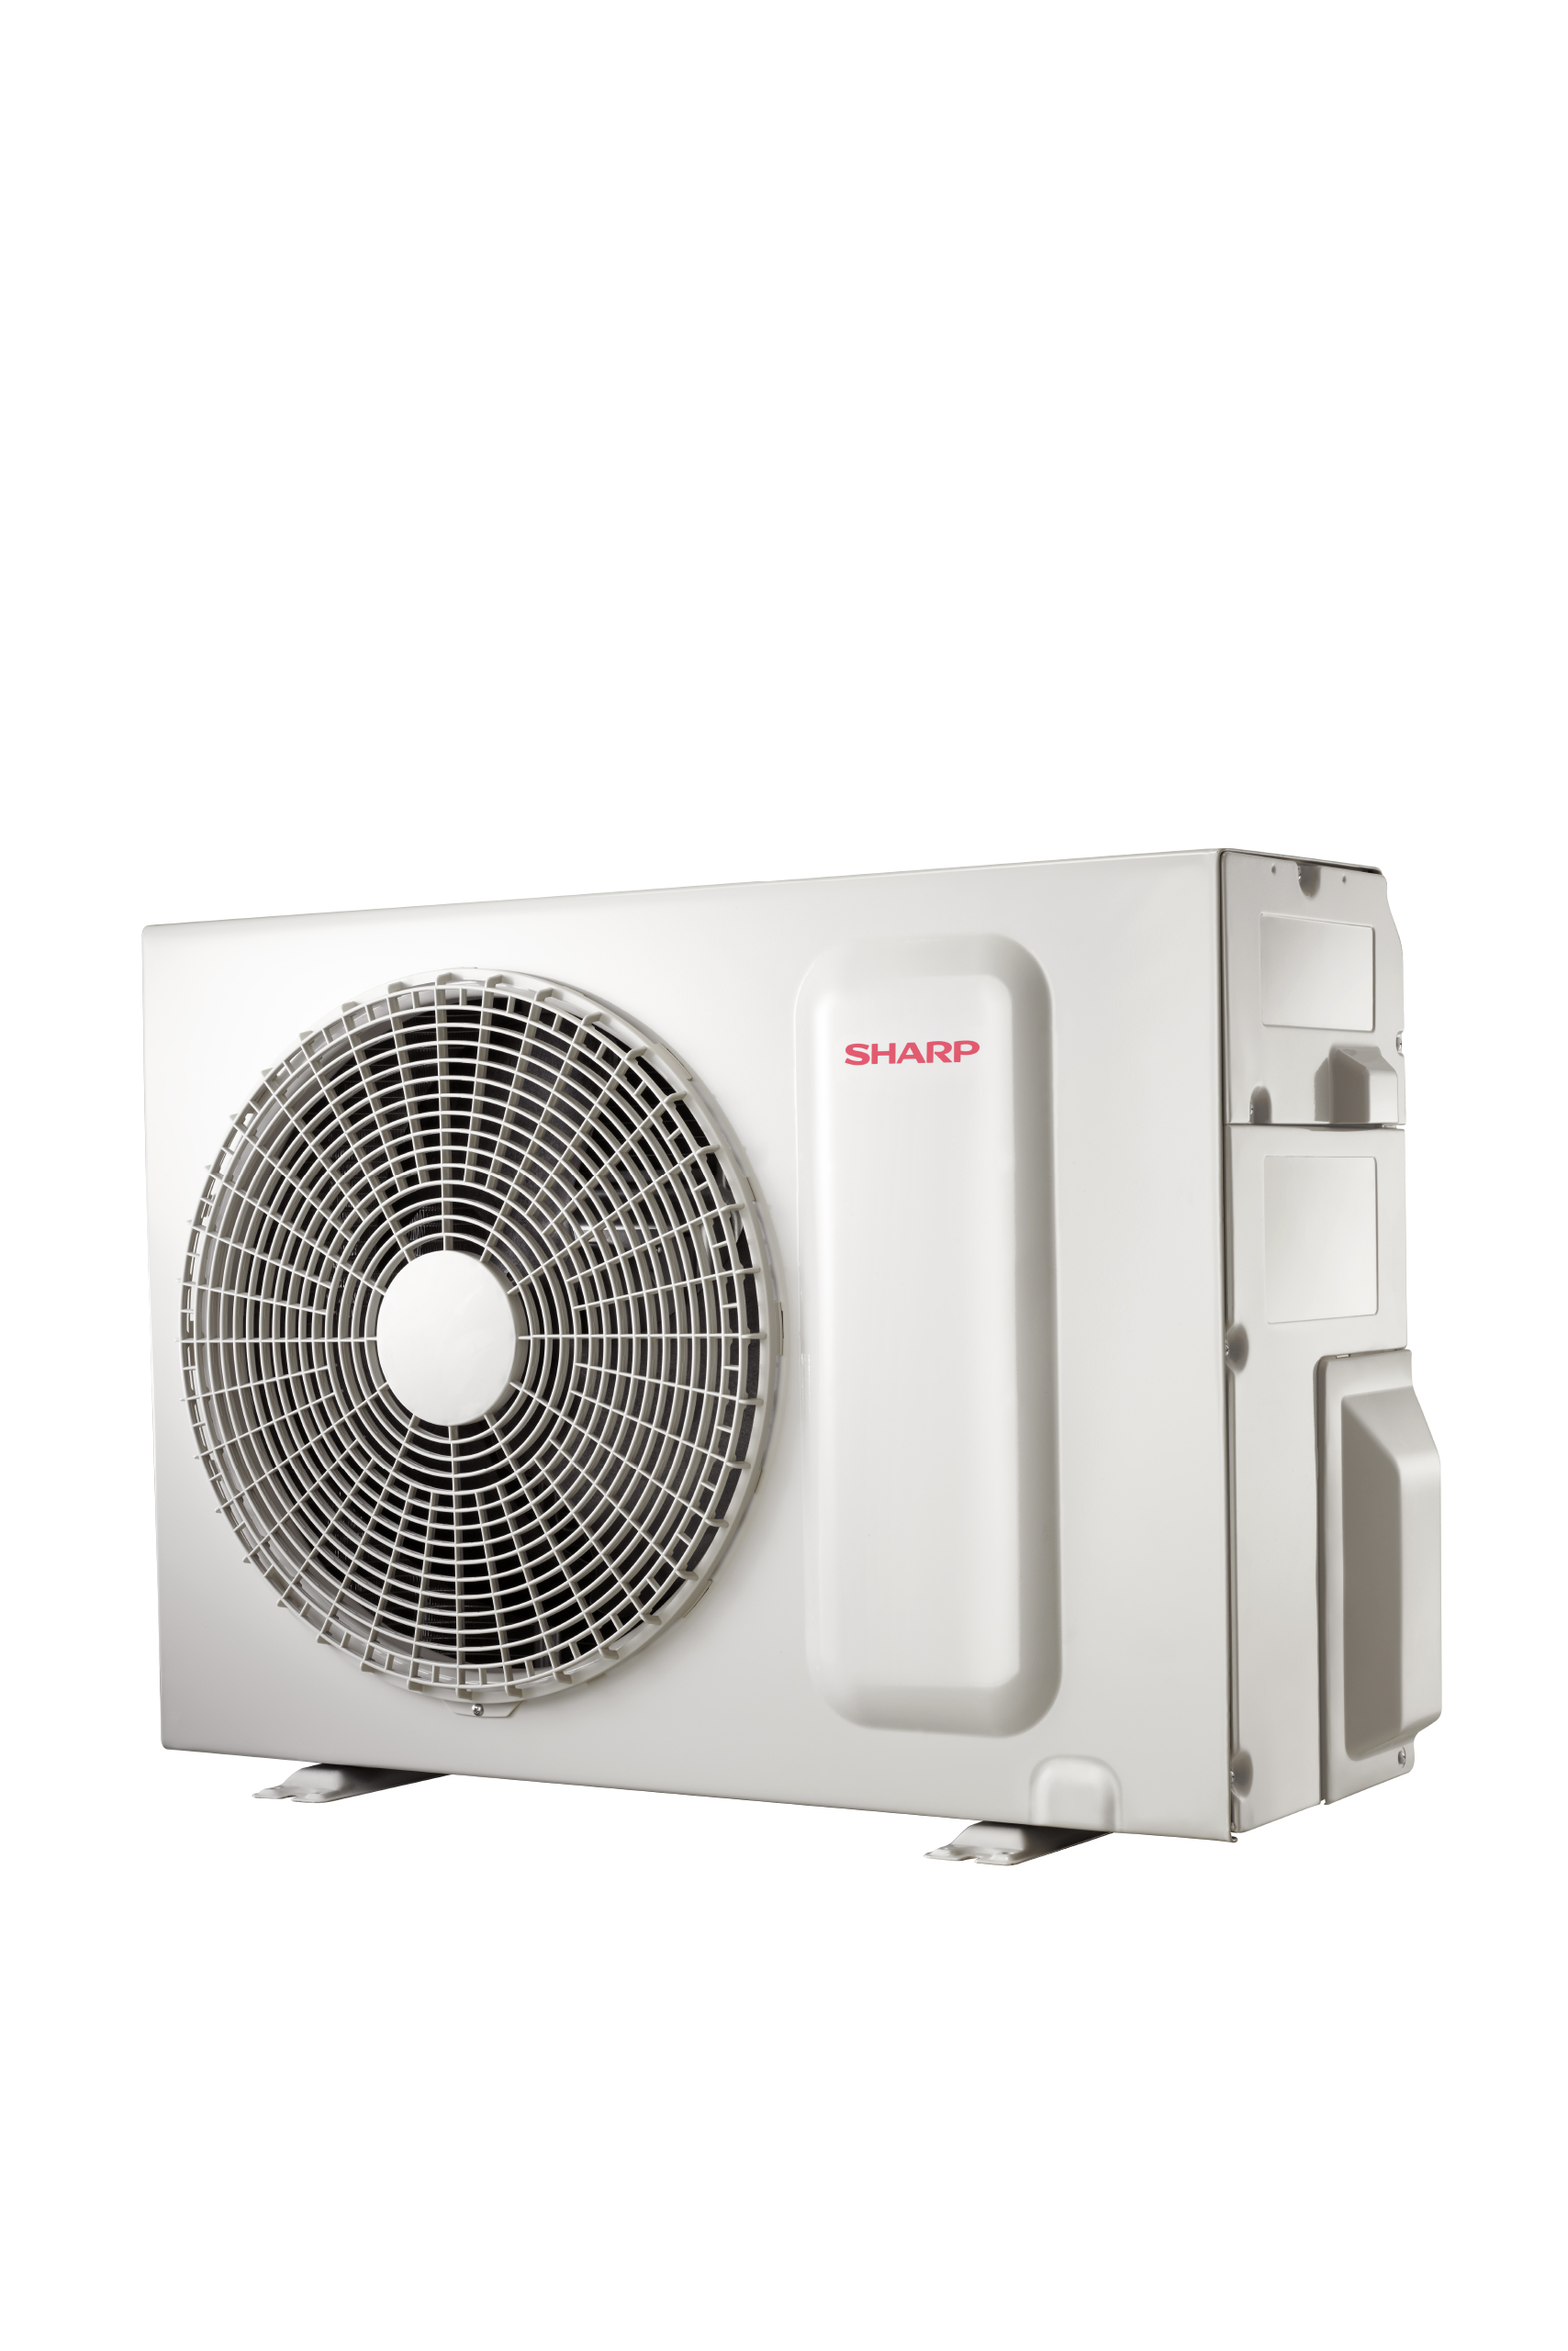 Sharp Air Conditioner 1.5 Ton